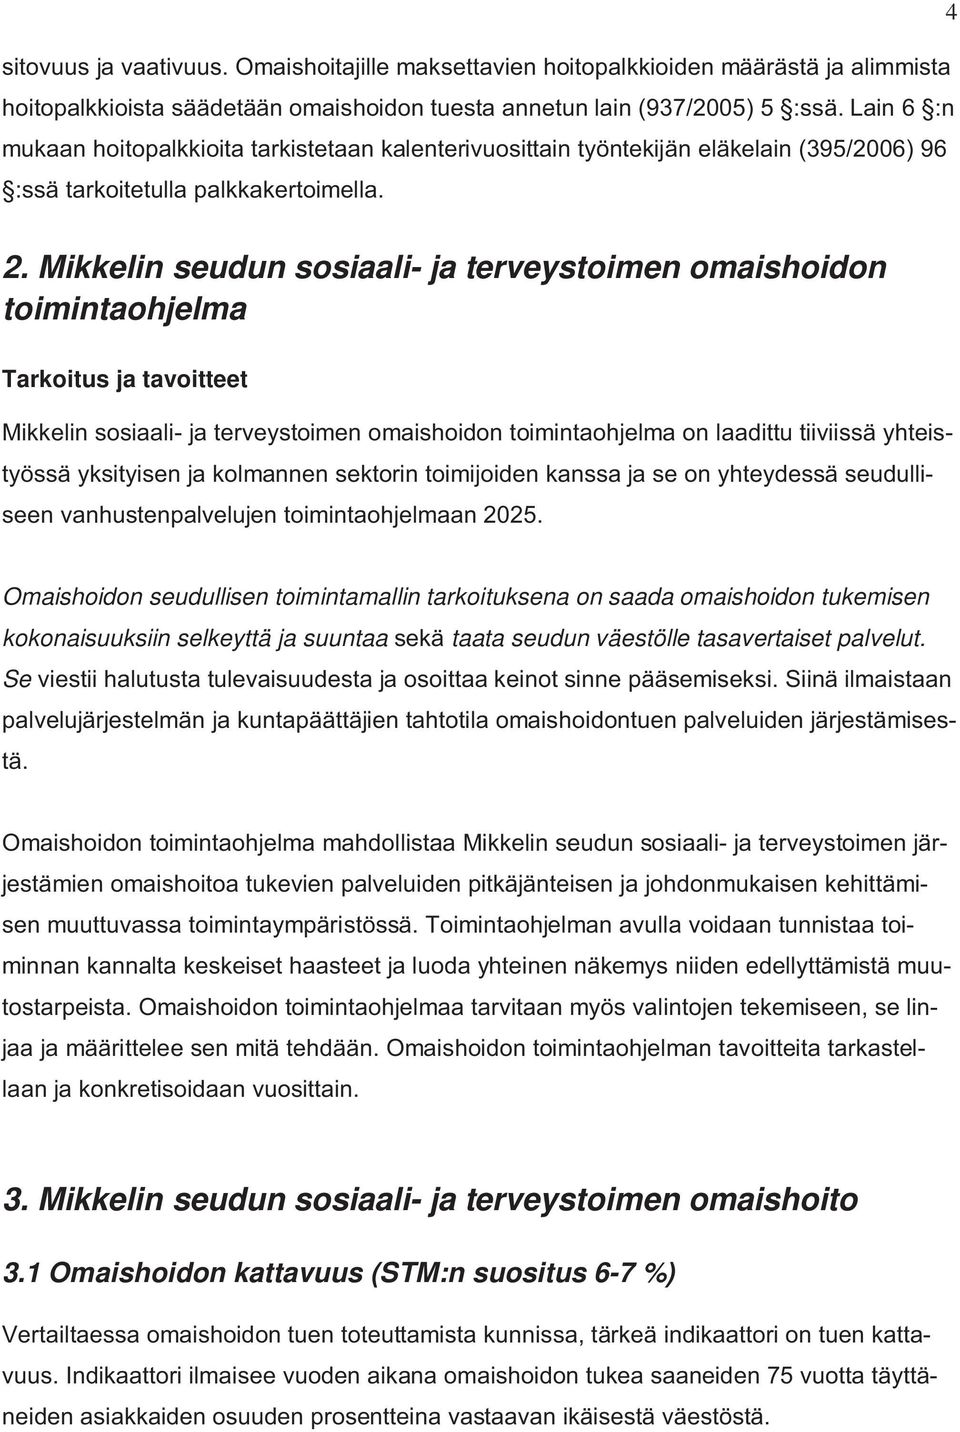 Mikkelin seudun sosiaali- ja terveystoimen omaishoidon toimintaohjelma Tarkoitus ja tavoitteet Mikkelin sosiaali- ja terveystoimen omaishoidon toimintaohjelma on laadittu tiiviissä yhteistyössä